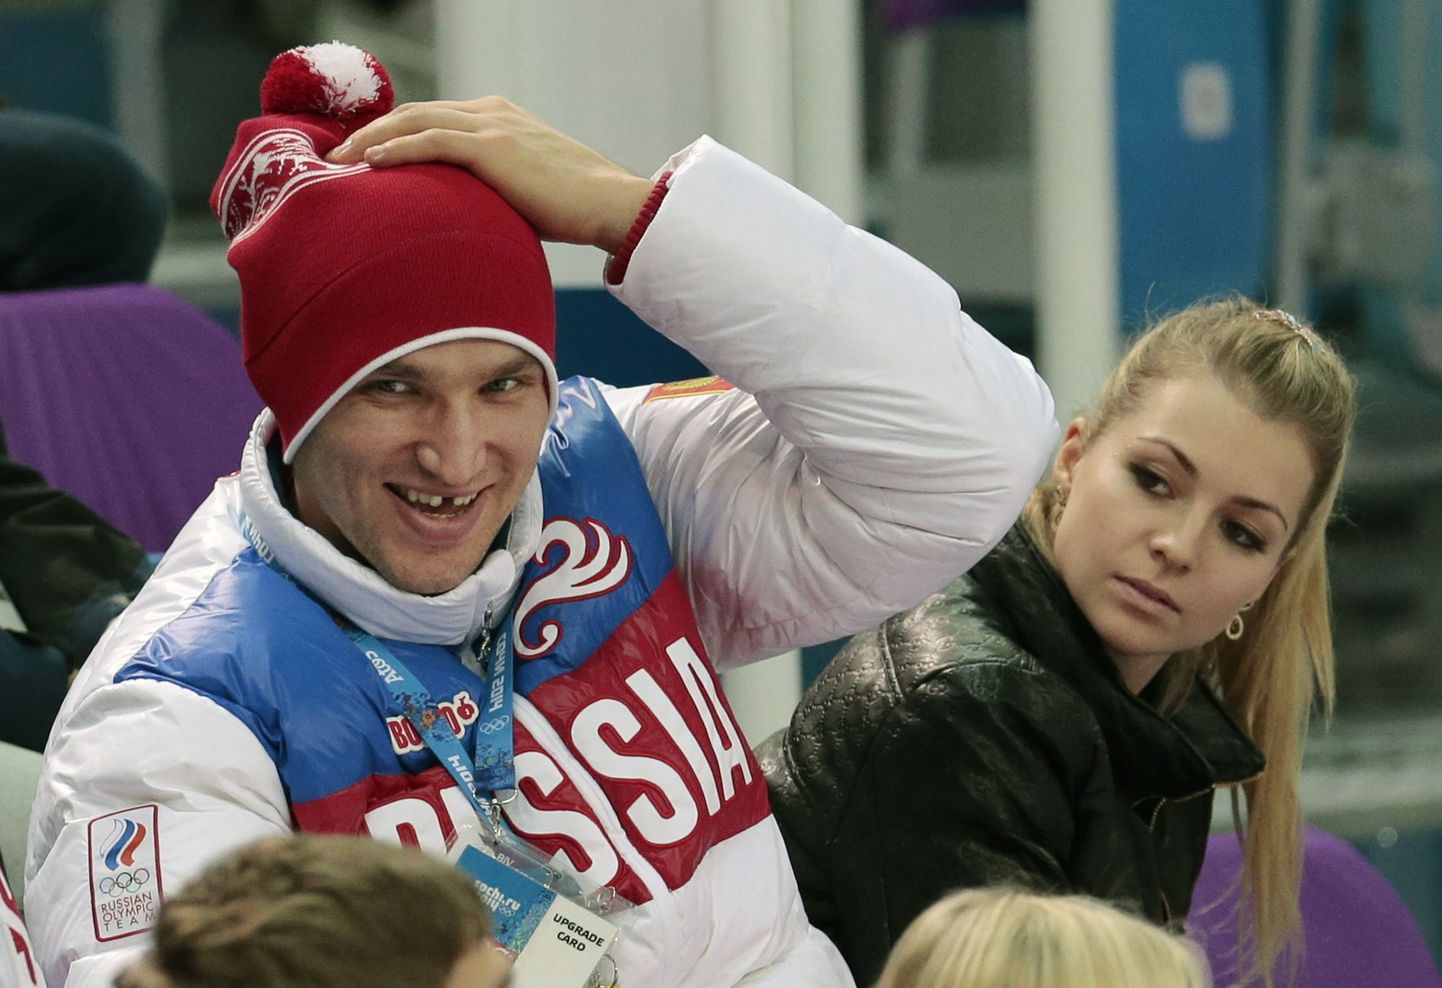 Venemaa hokimängija Alexander Ovechkin ja tema kihlatu tennisist Maria Kirilenko.